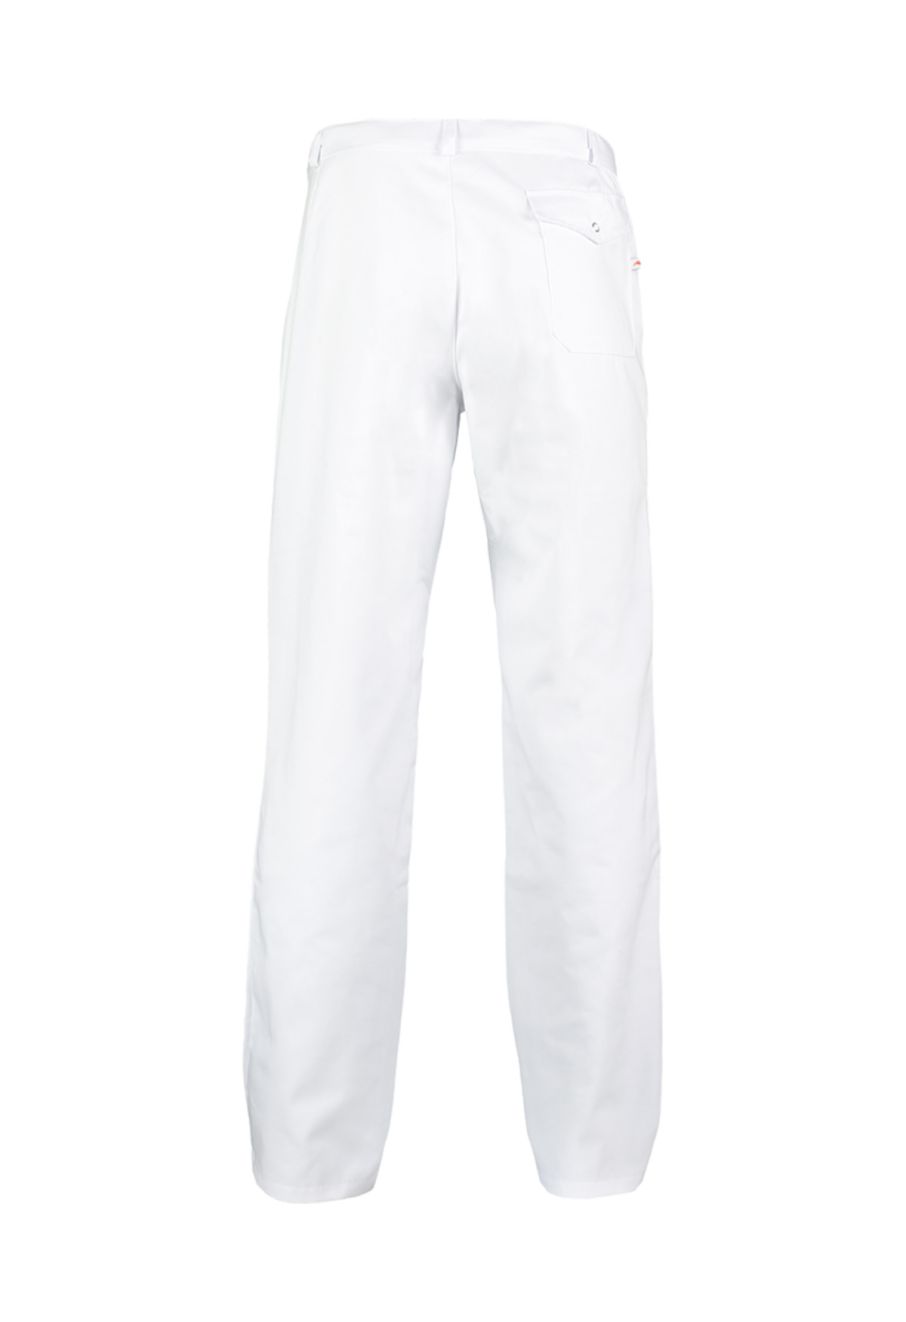 Haen Peter Men's Healthcare Trousers, White